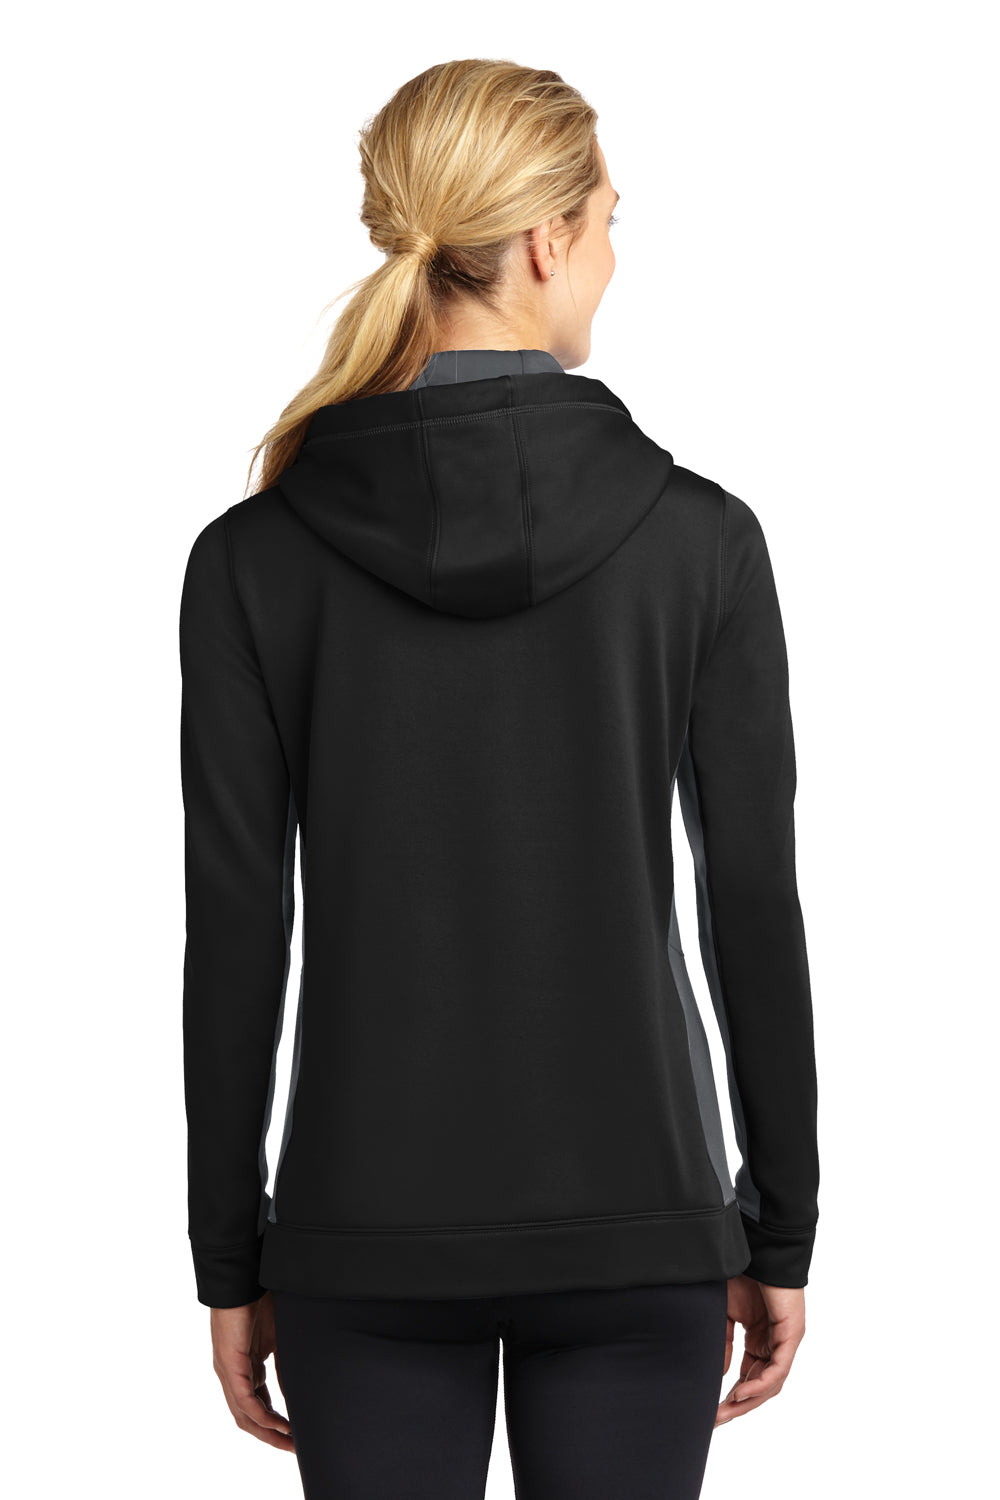 Sport-Tek LST235 Womens Sport-Wick Moisture Wicking Fleece Hooded Sweatshirt Hoodie Black/Grey Back